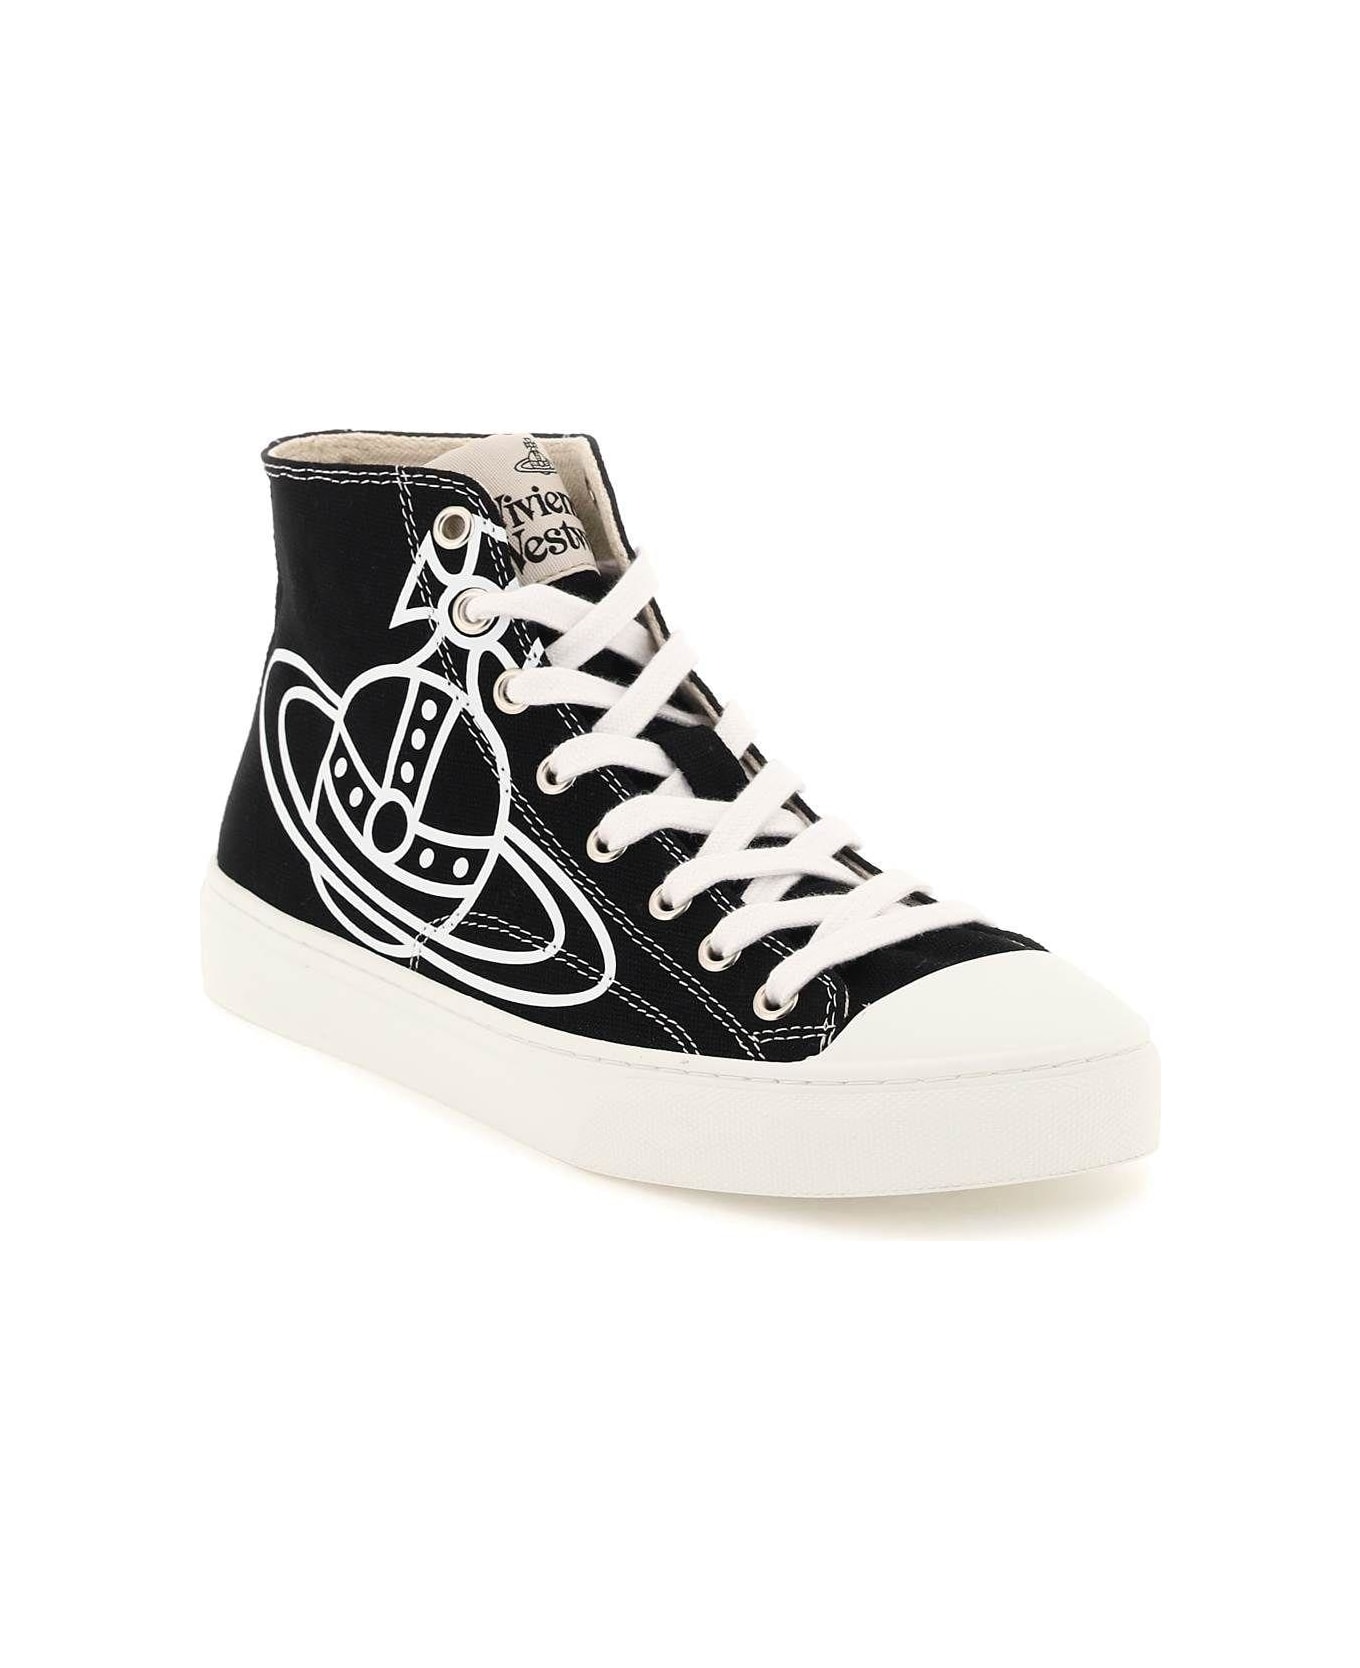 Vivienne Westwood Plimsoll High Top Canvas Sneakers - Nero スニーカー